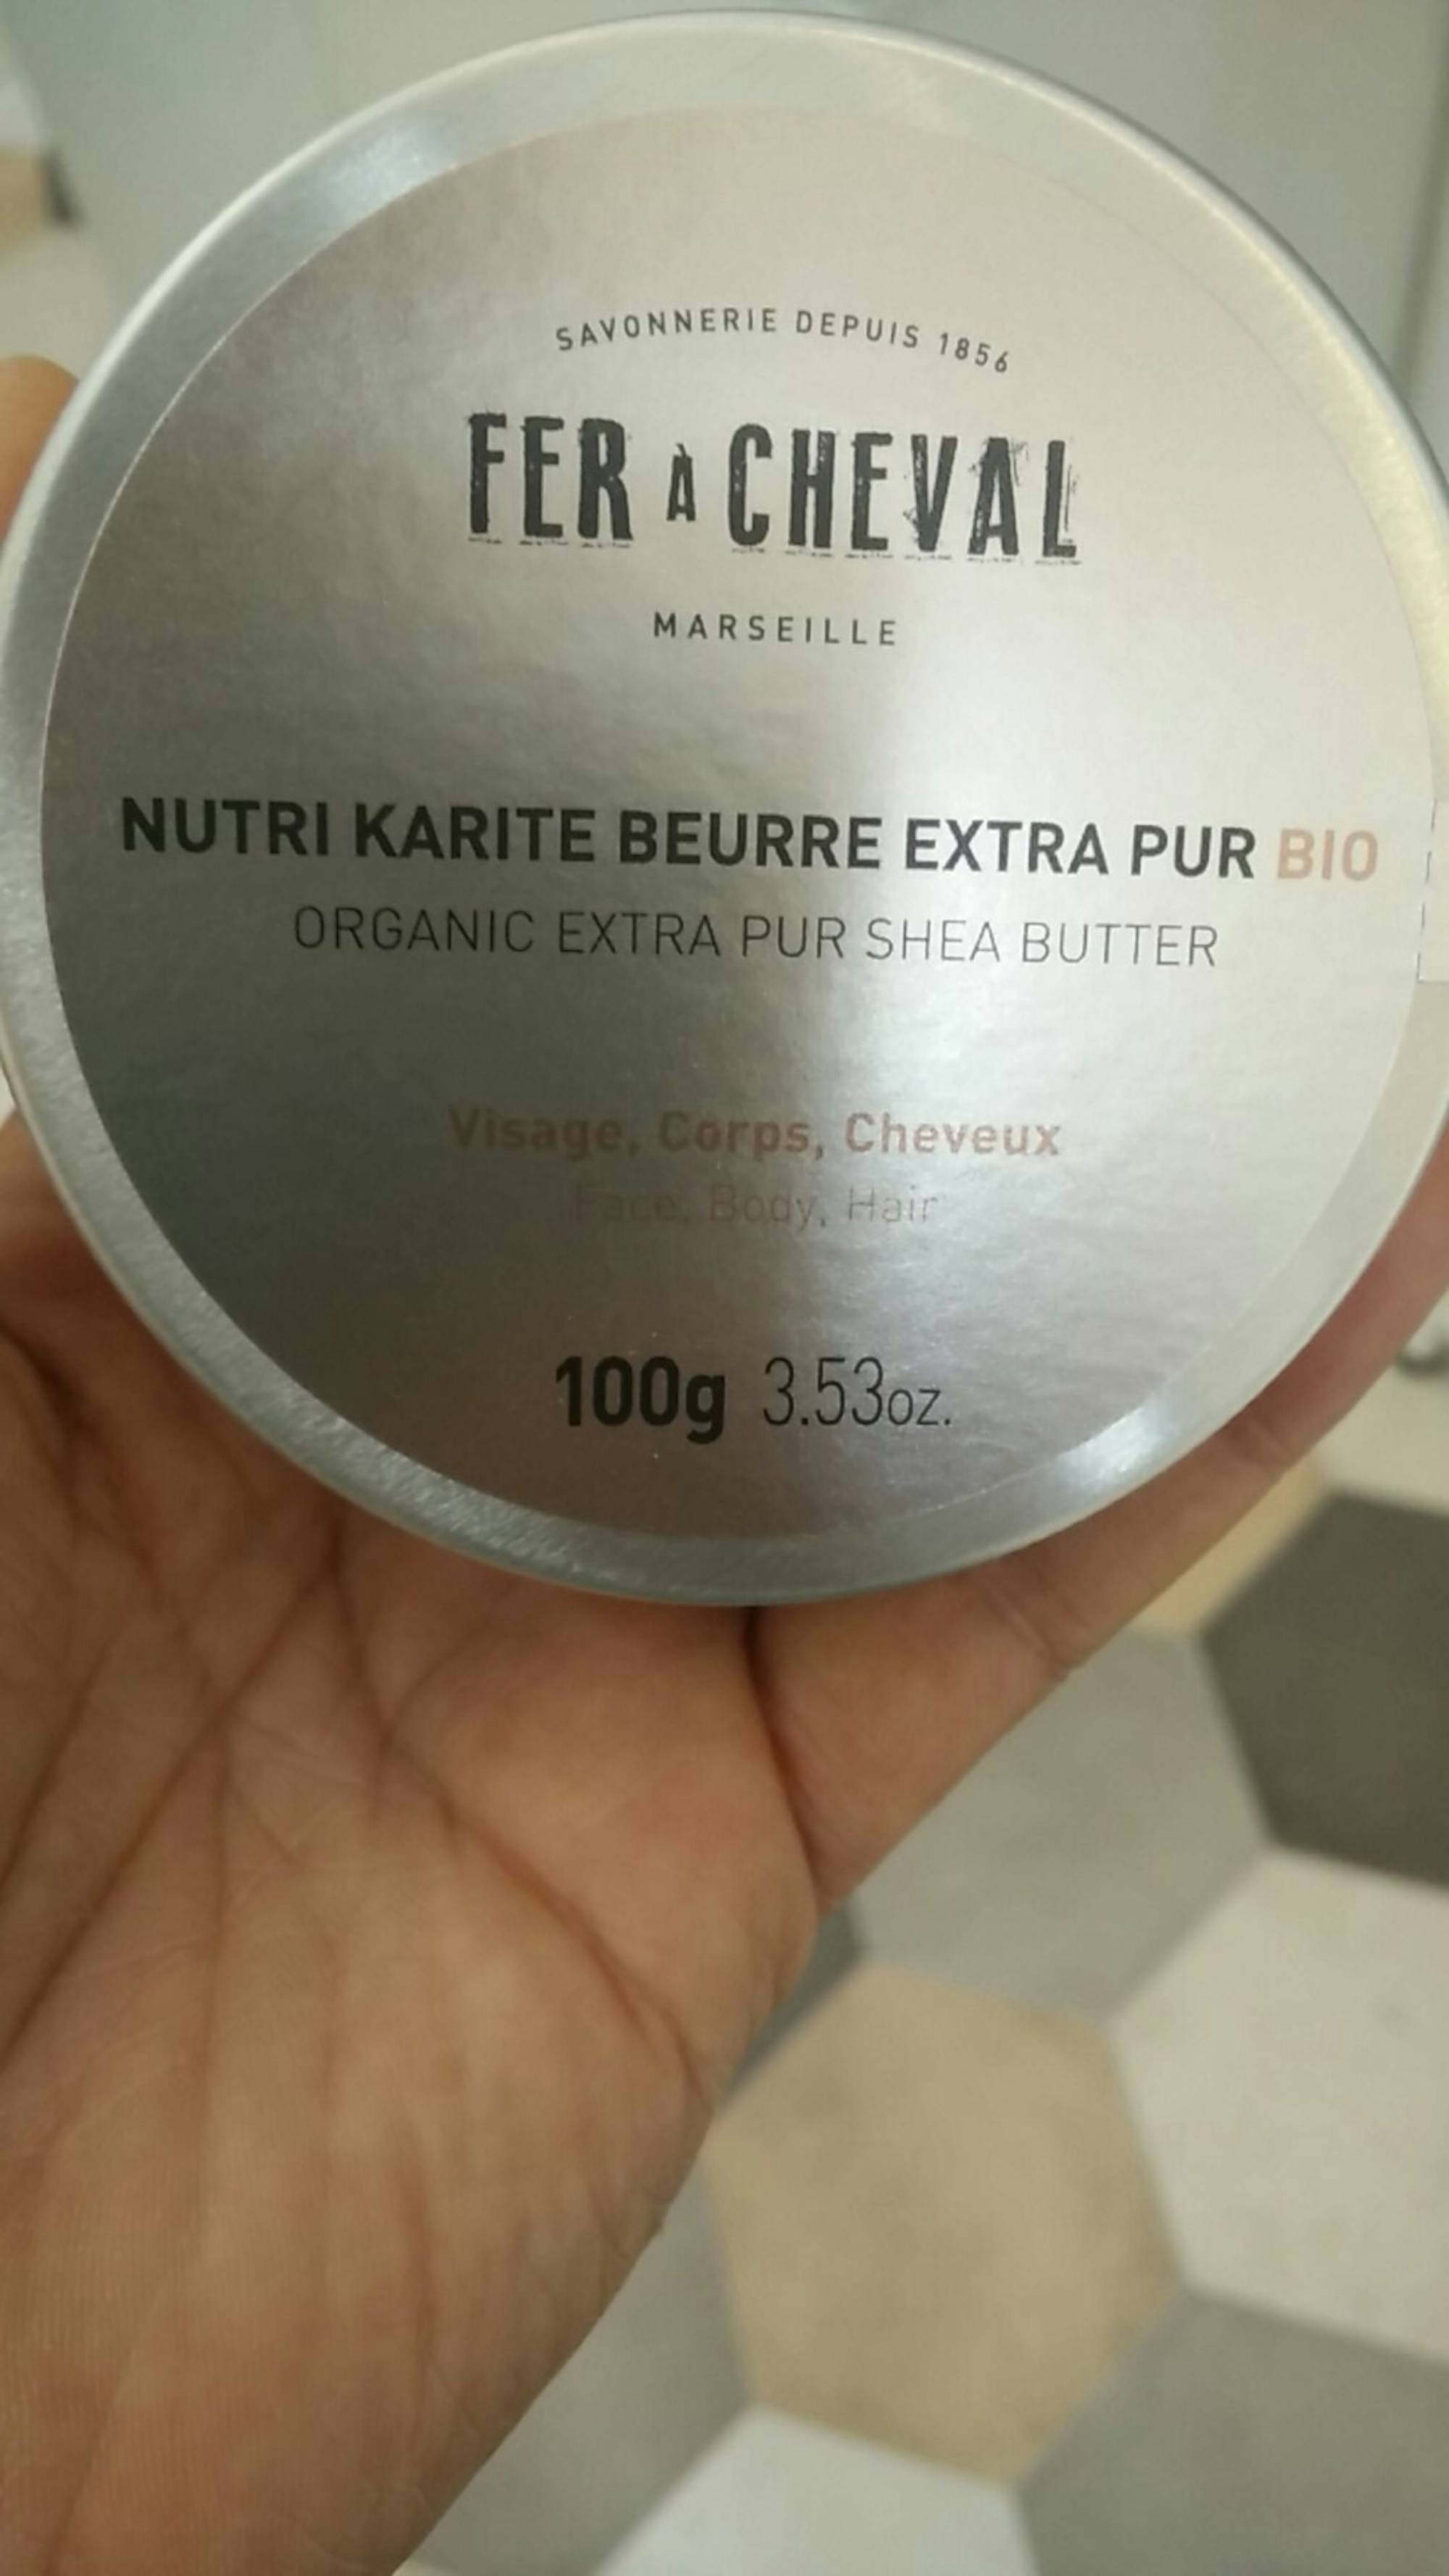 FER À CHEVAL MARSEILLE - Nutri karité beurre extra pur bio 